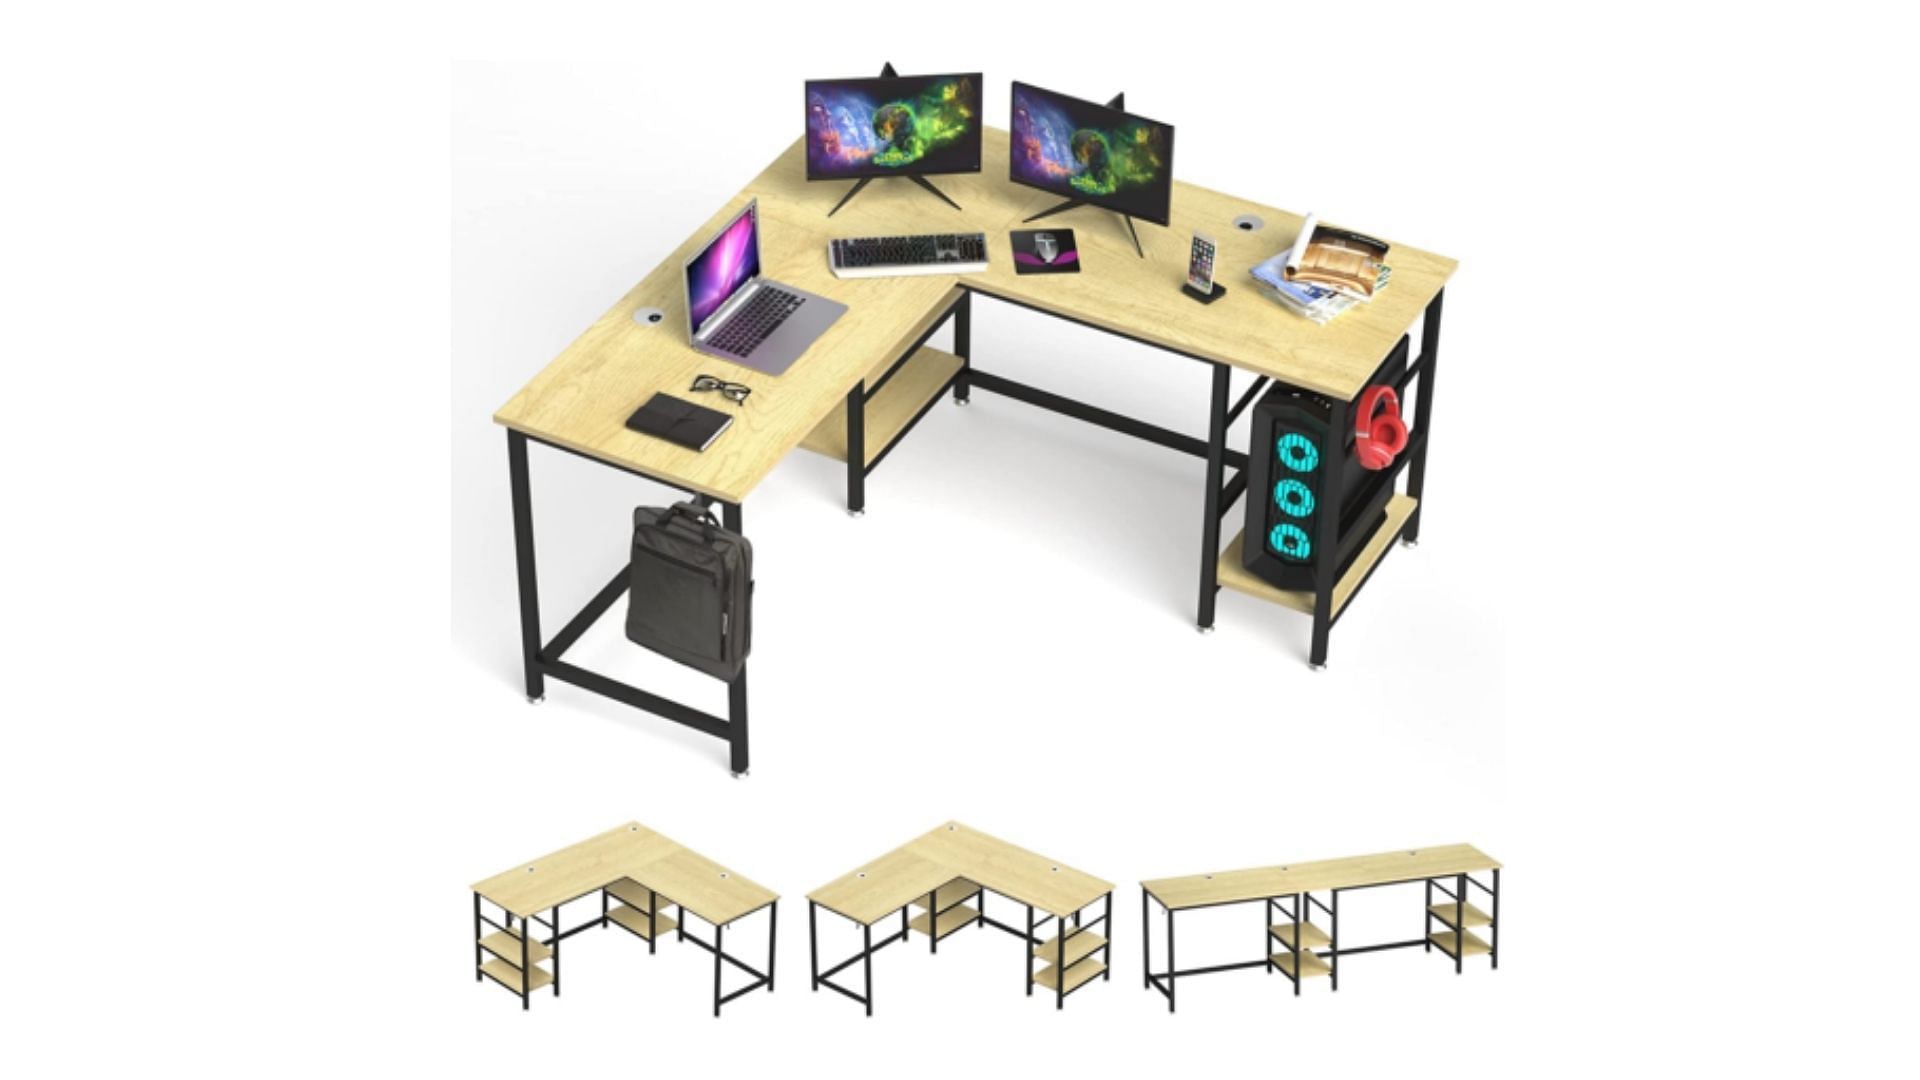 The 5 best desks of 2022